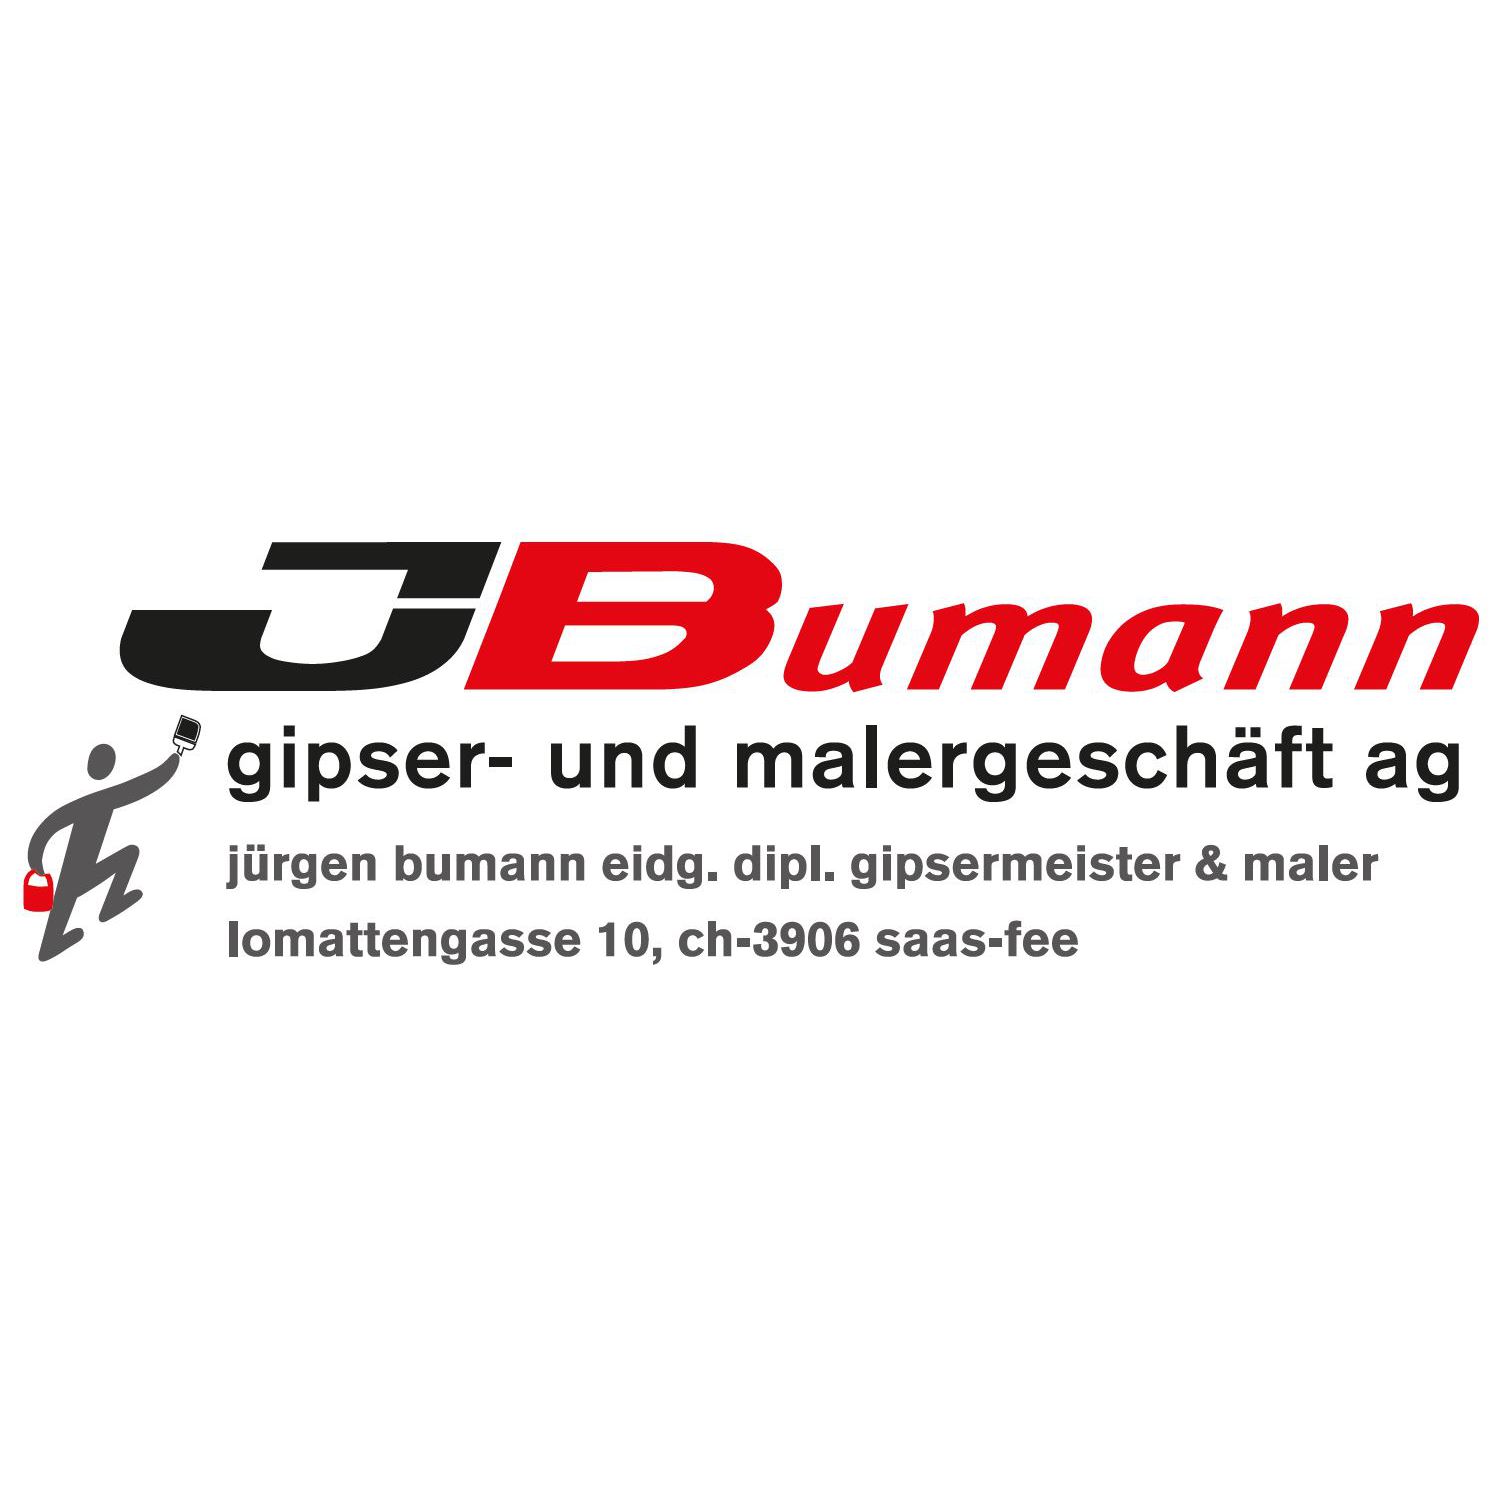 JBuman gipser- und malergeschäft ag Logo